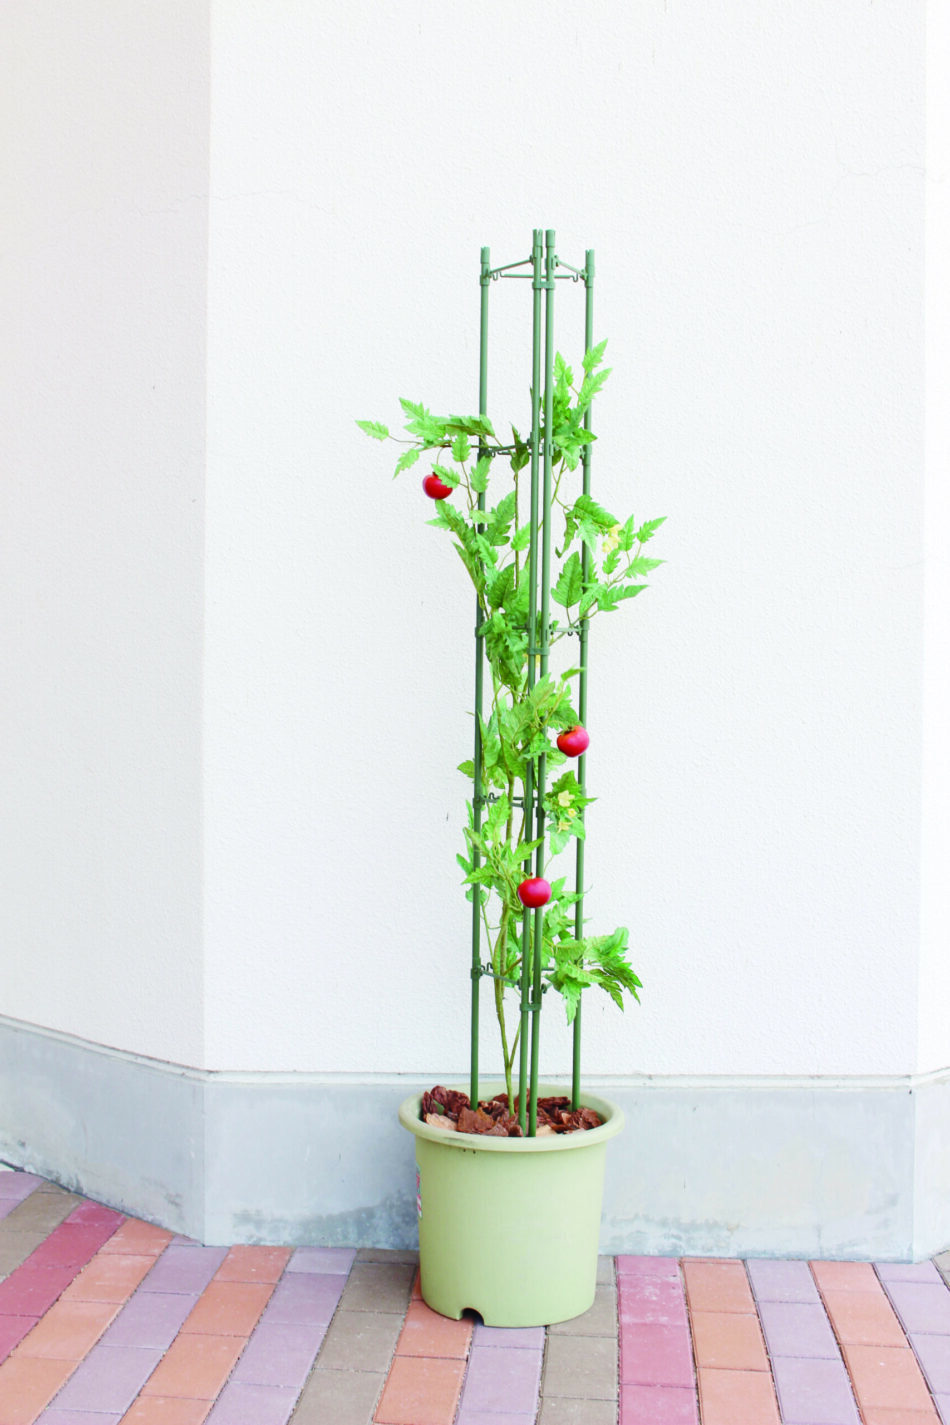 タワー型でトマト栽培に